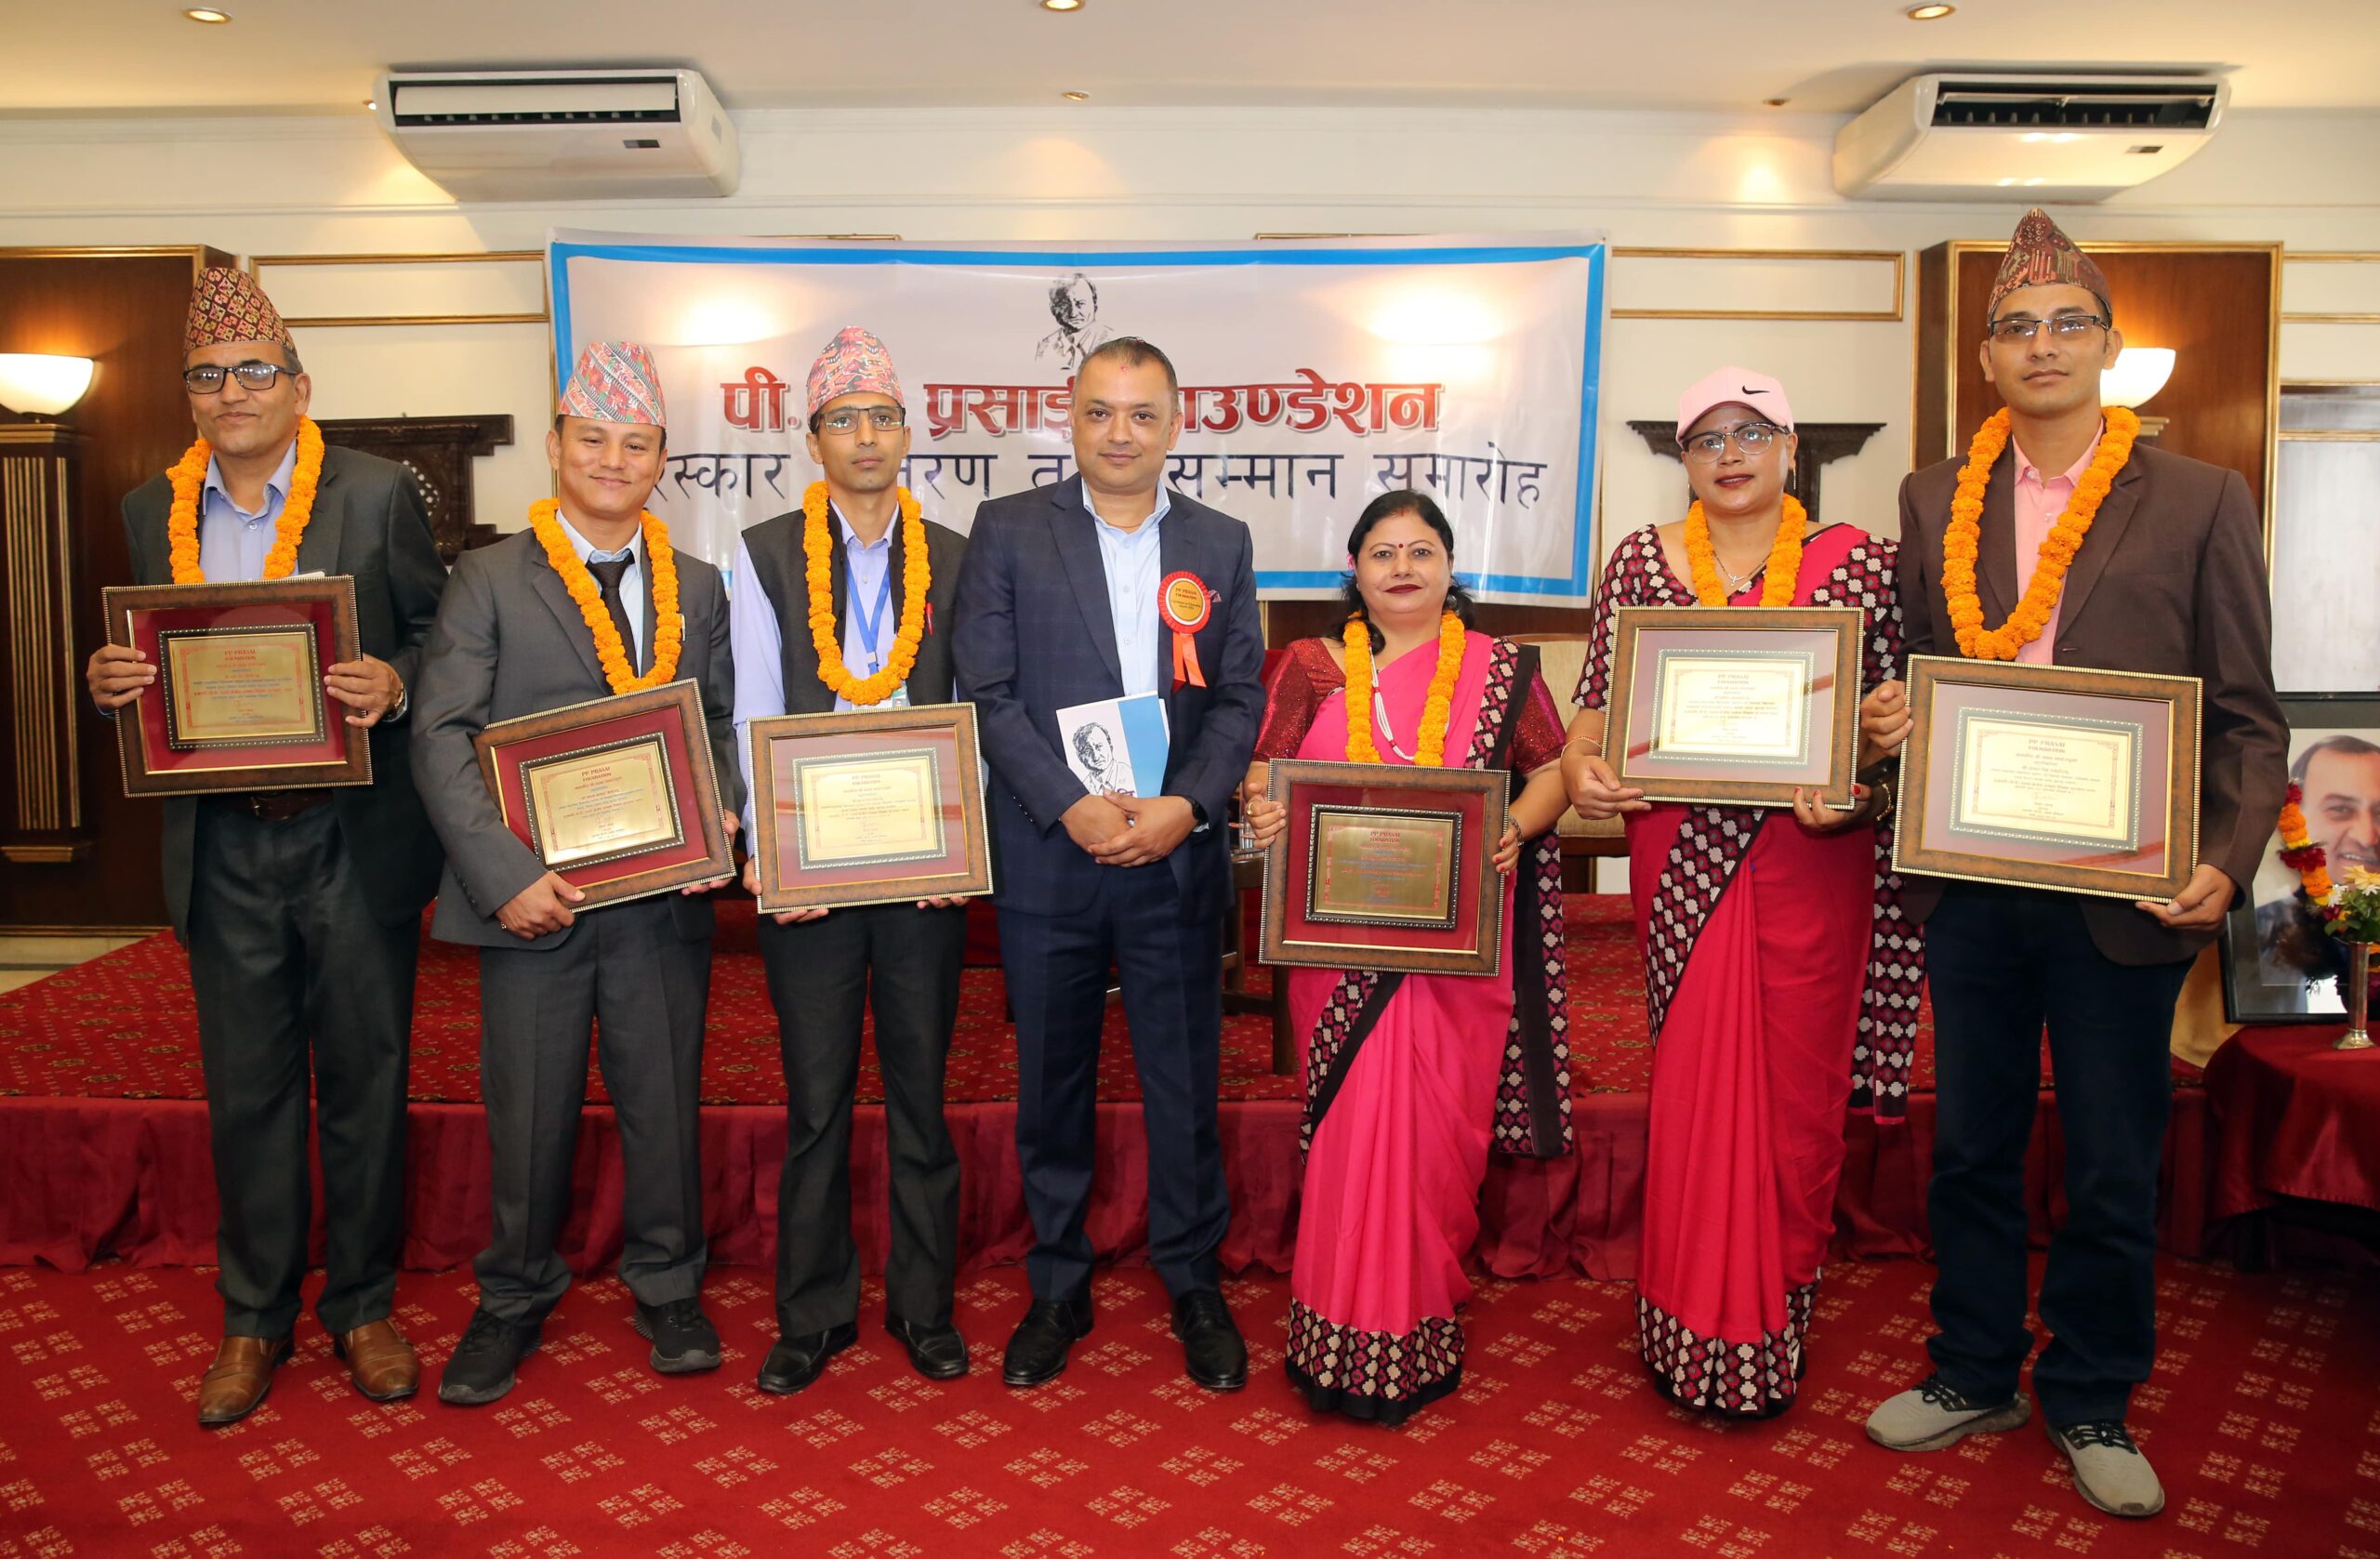 PP Prasai Teachers Excellence Award 2022 Winners